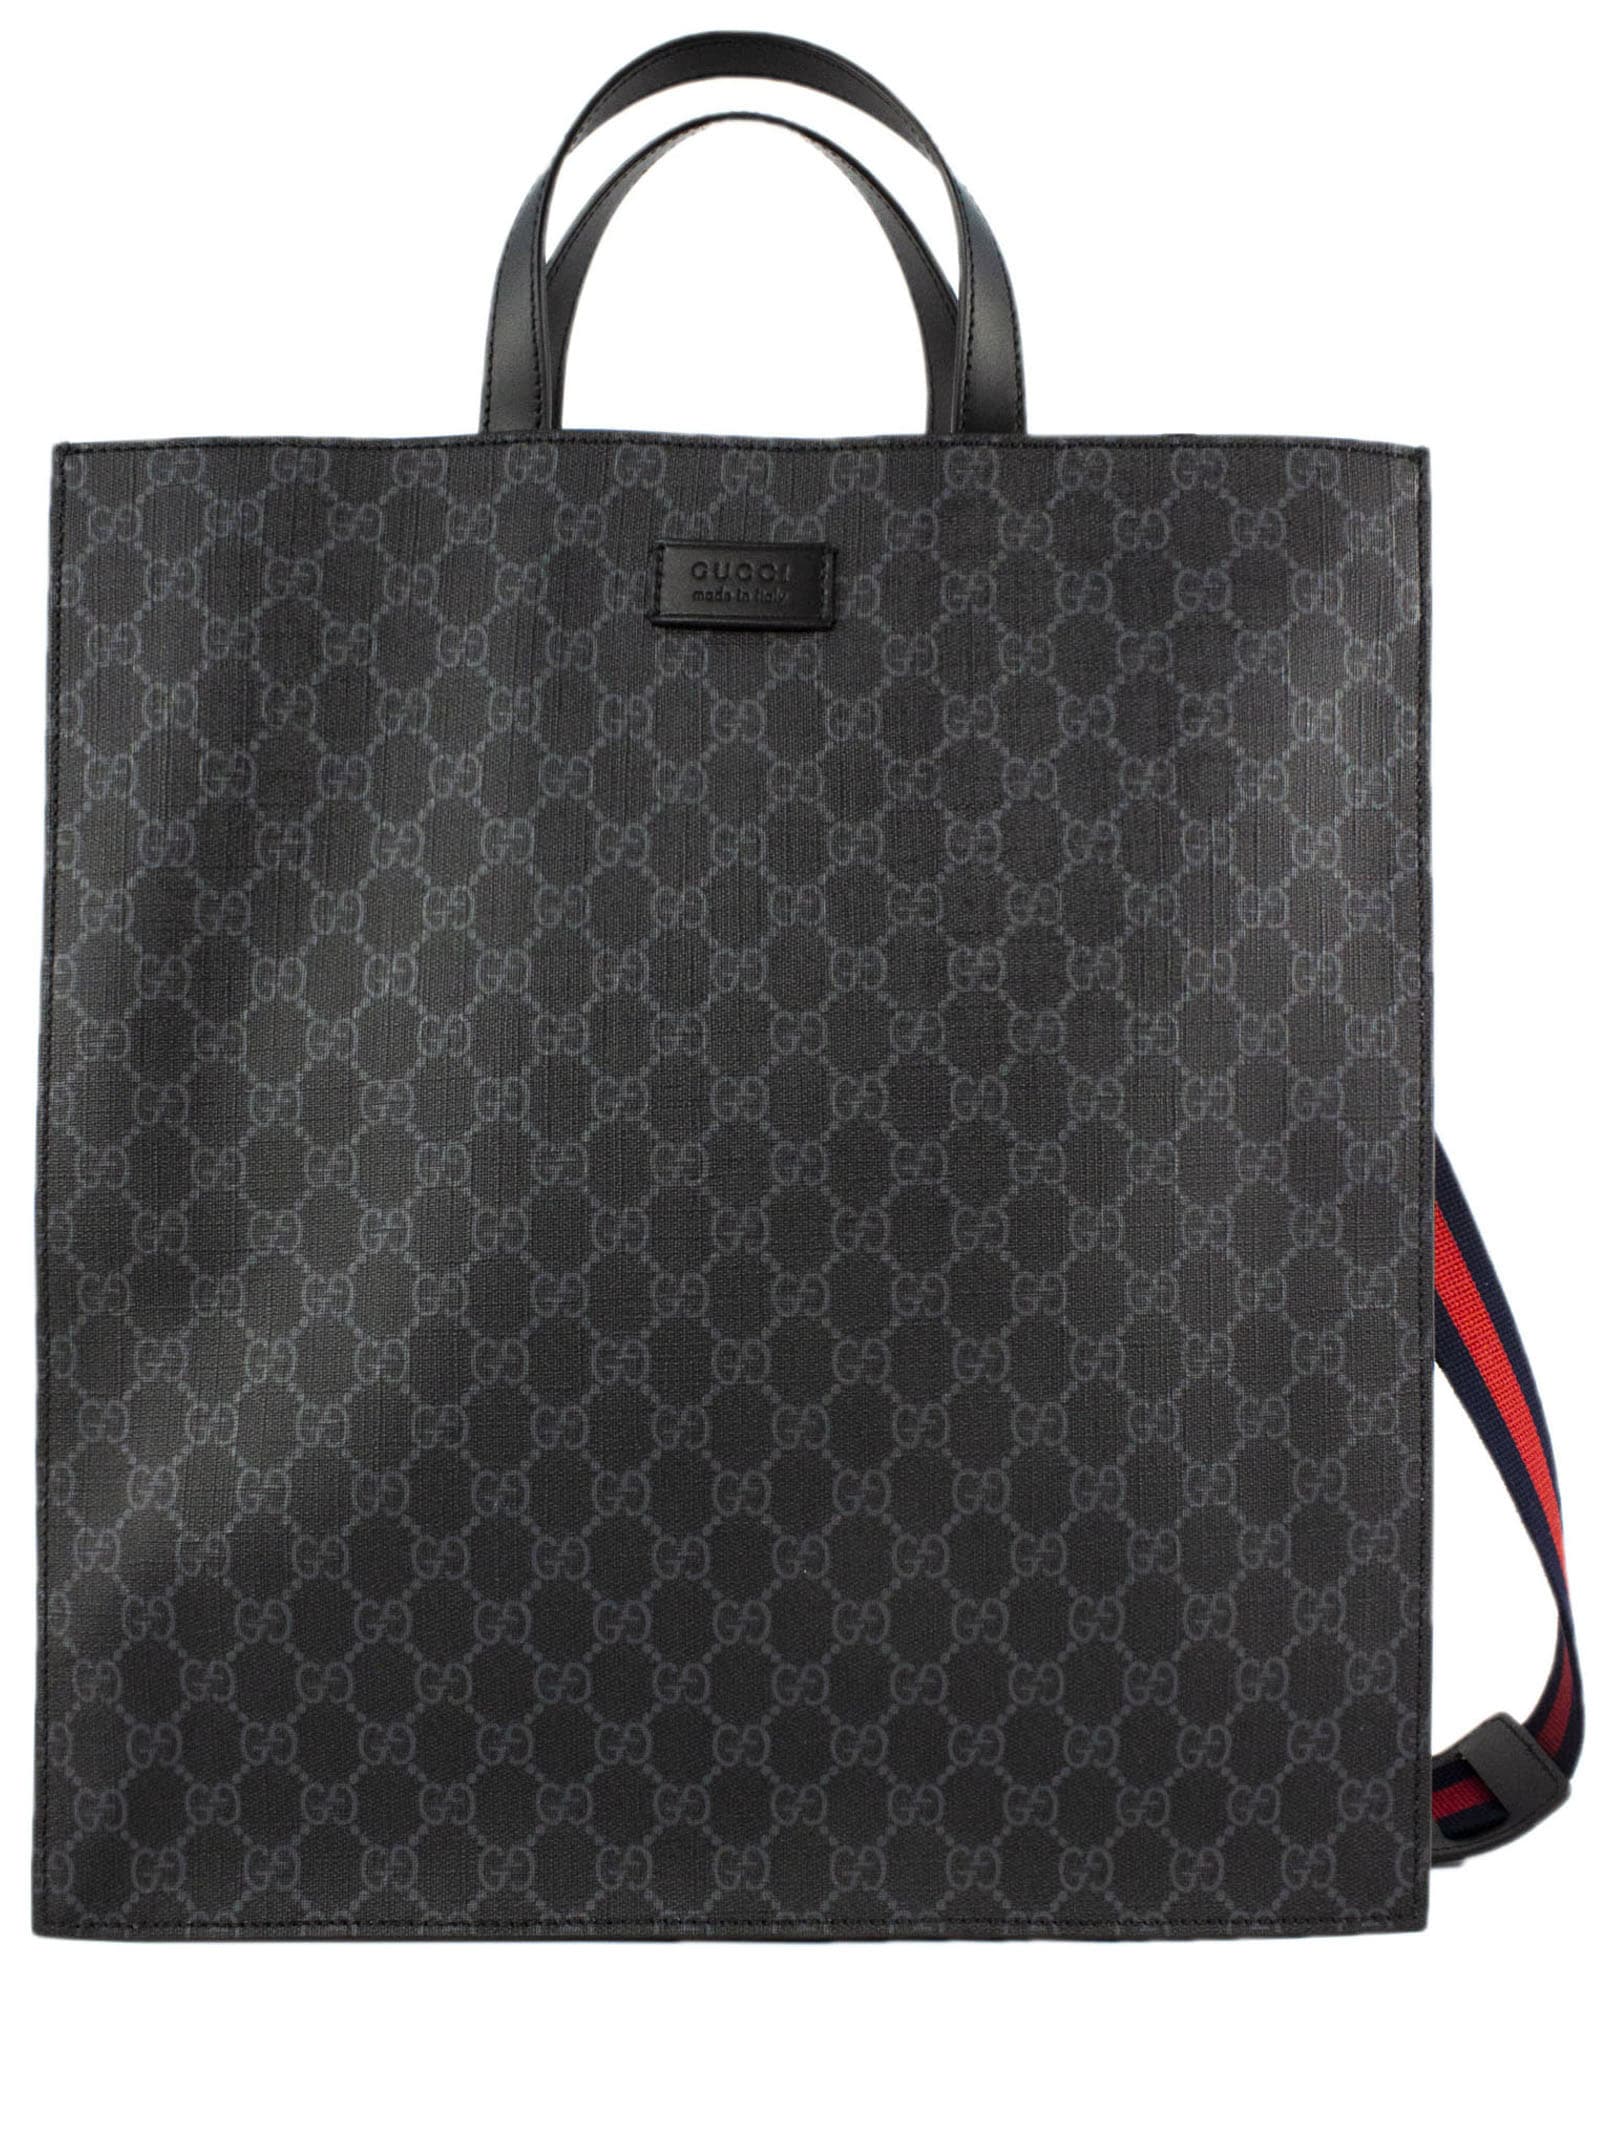 Gucci Gg Supreme Tote Bag In Nero